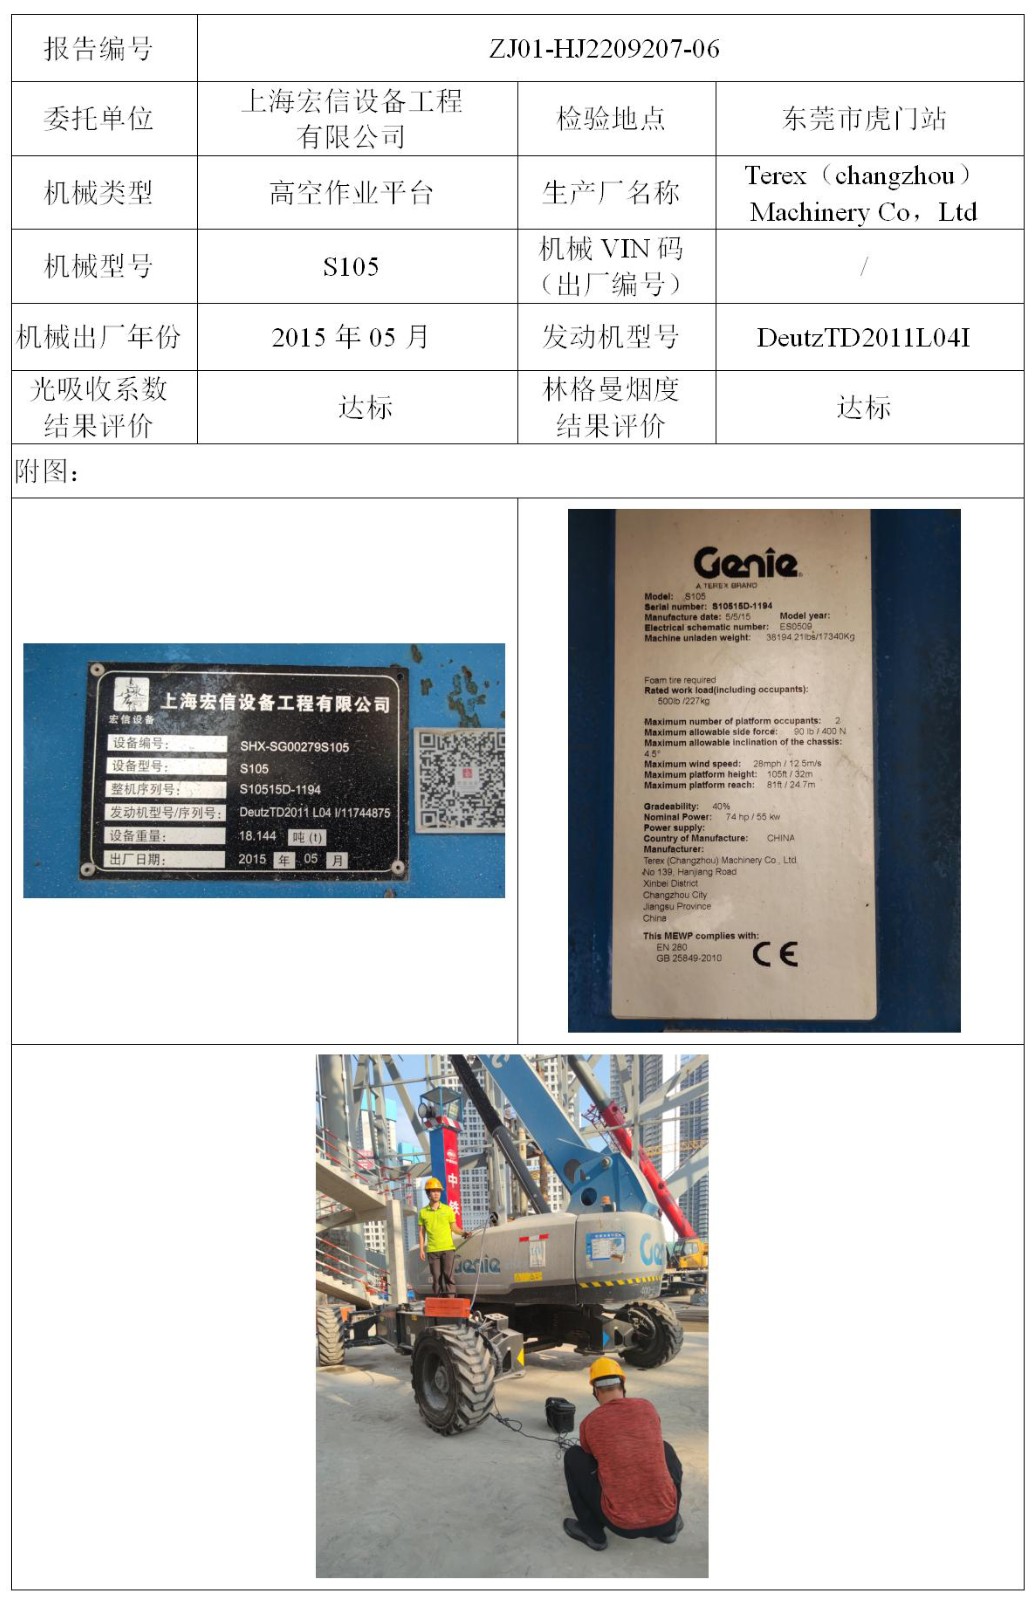 委托-ZJ01-HJ2209207-06上海宏信设备工程有限公司（叉车废气）二维码-张伟仪_01.jpg